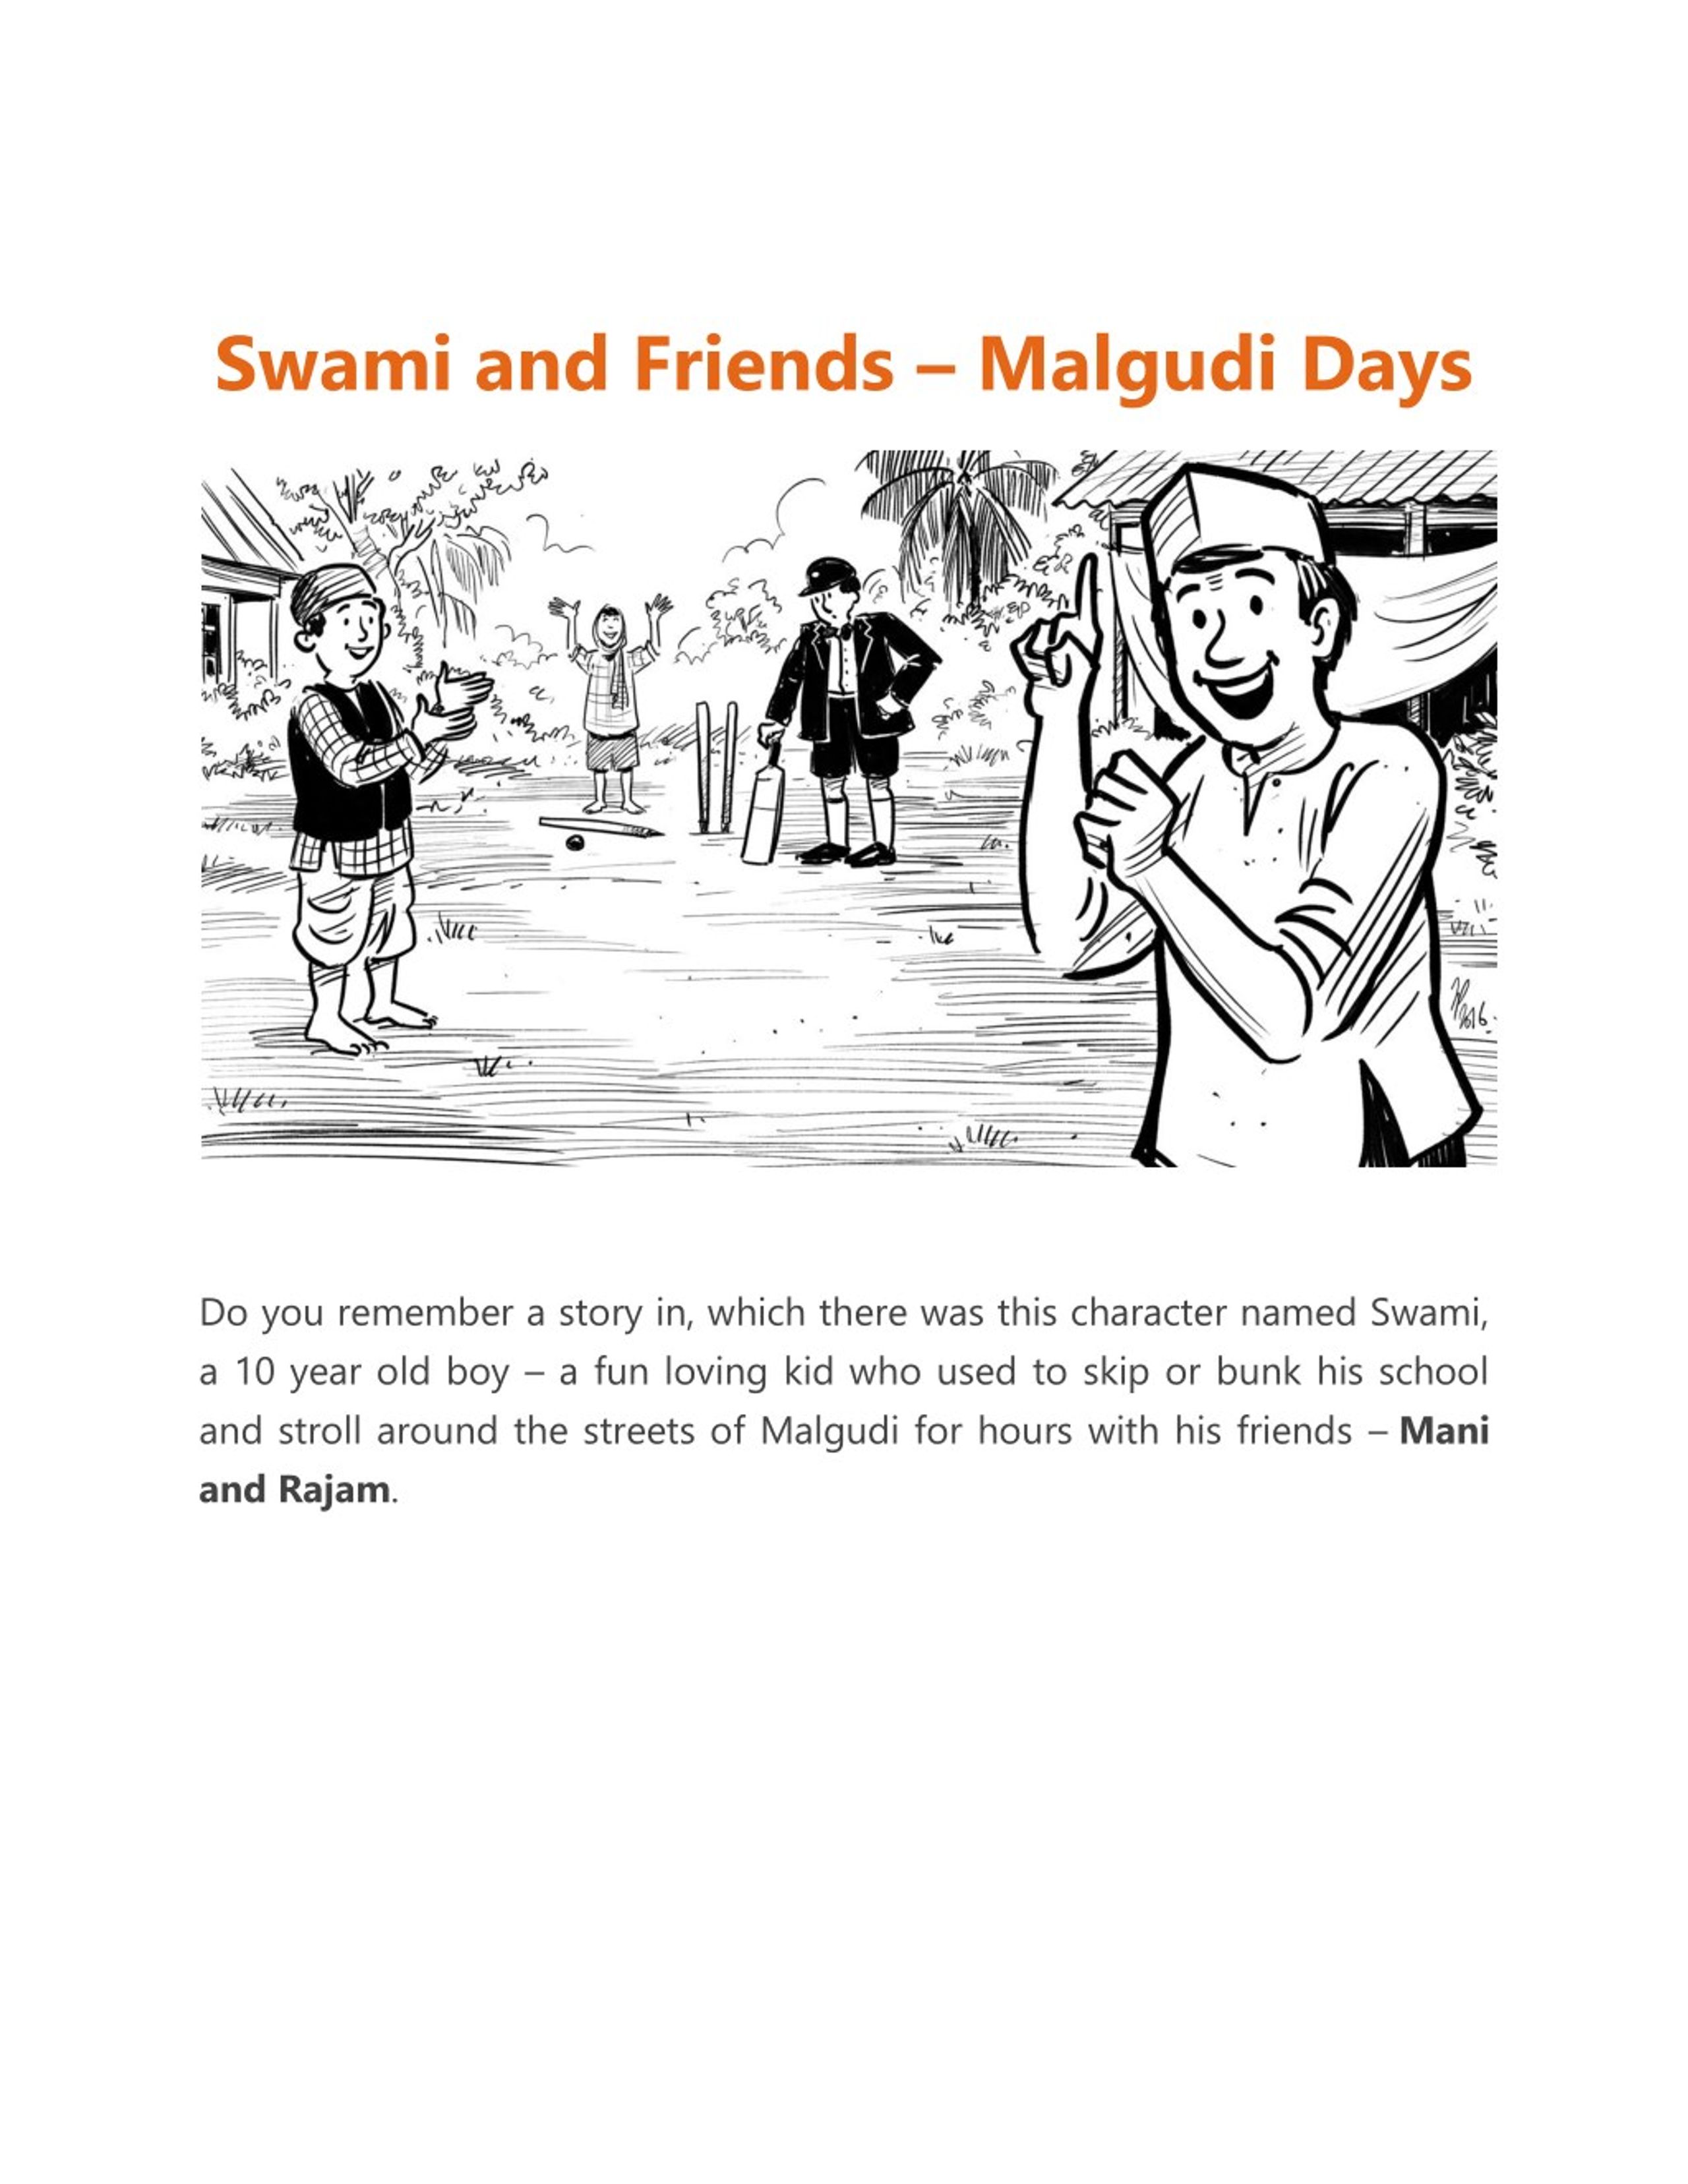 Rajam and Mani | Short English Story by R K Narayan - YouTube